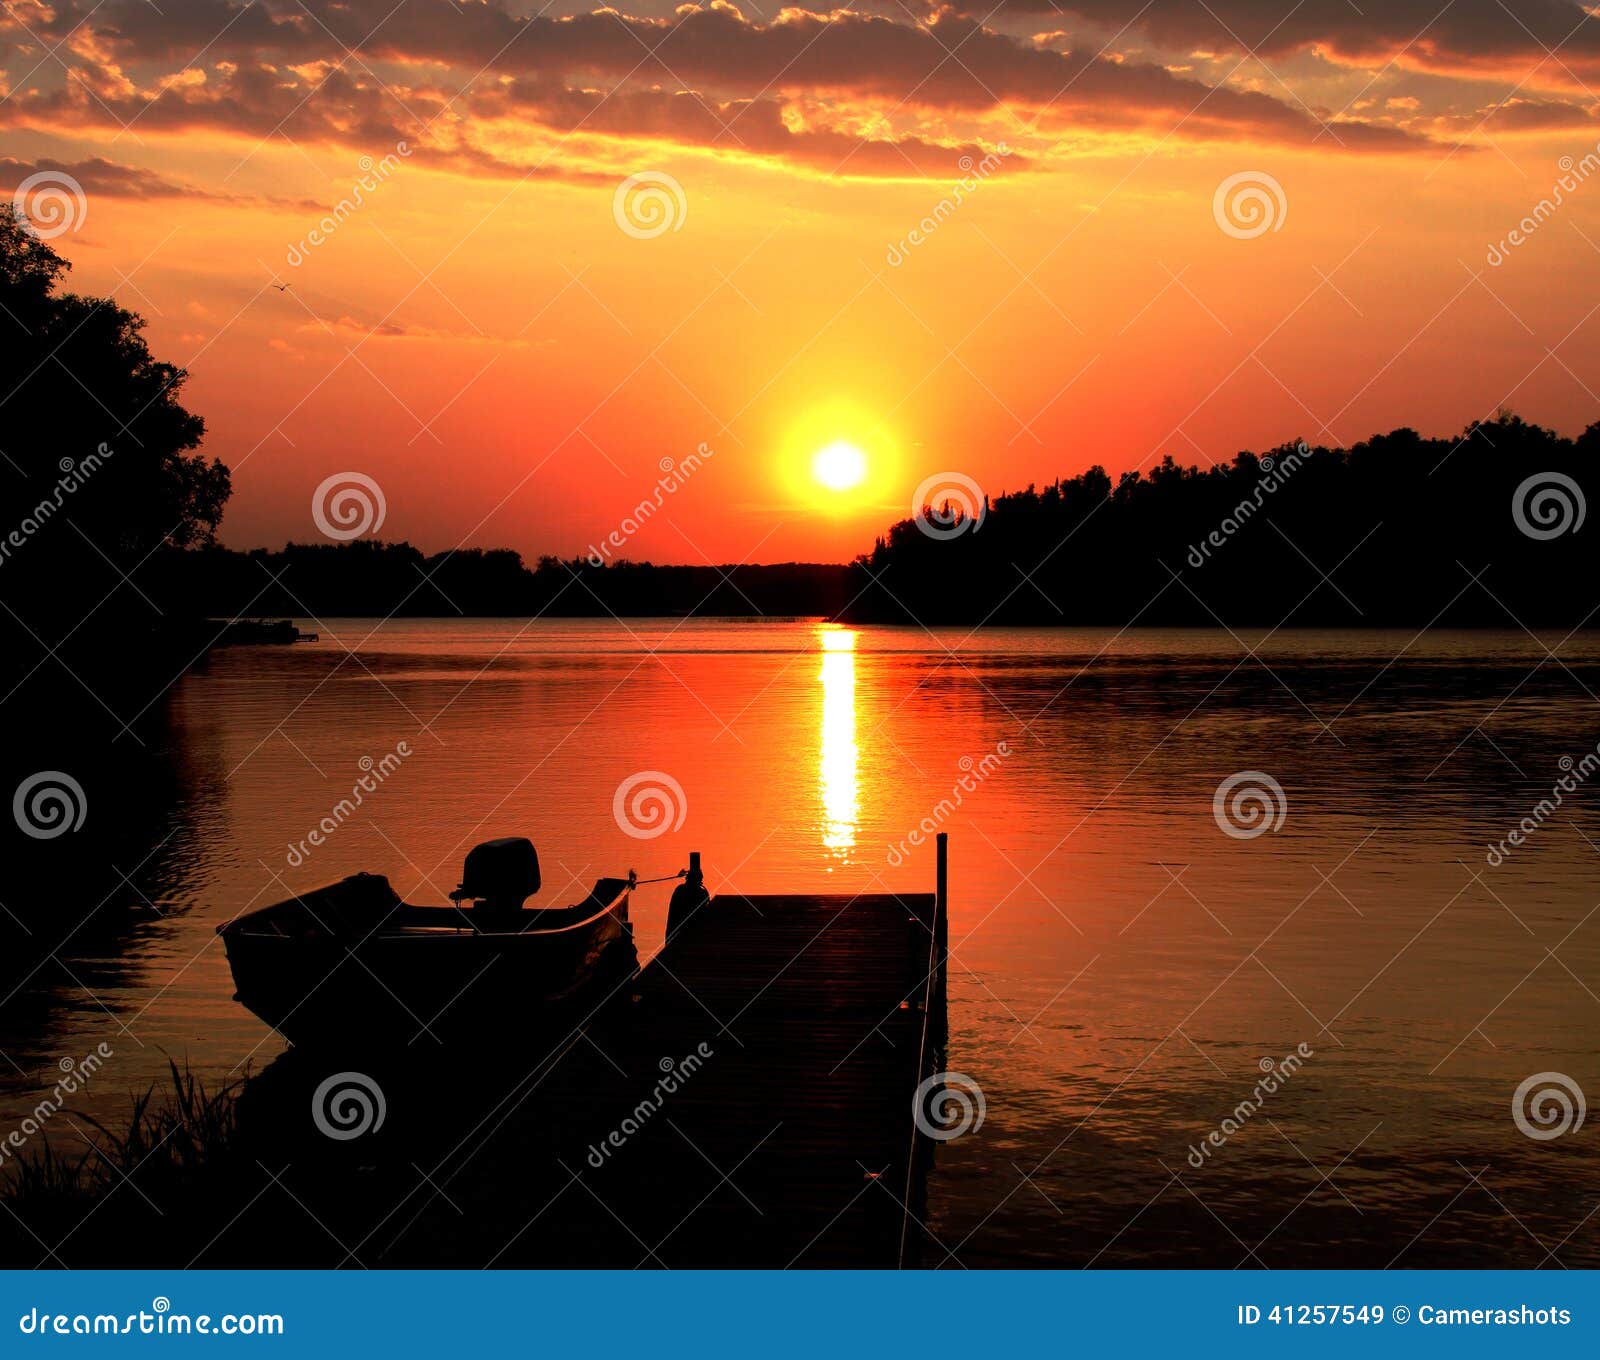 Minnesota lake sunset stock image. Image of gold, hill ...